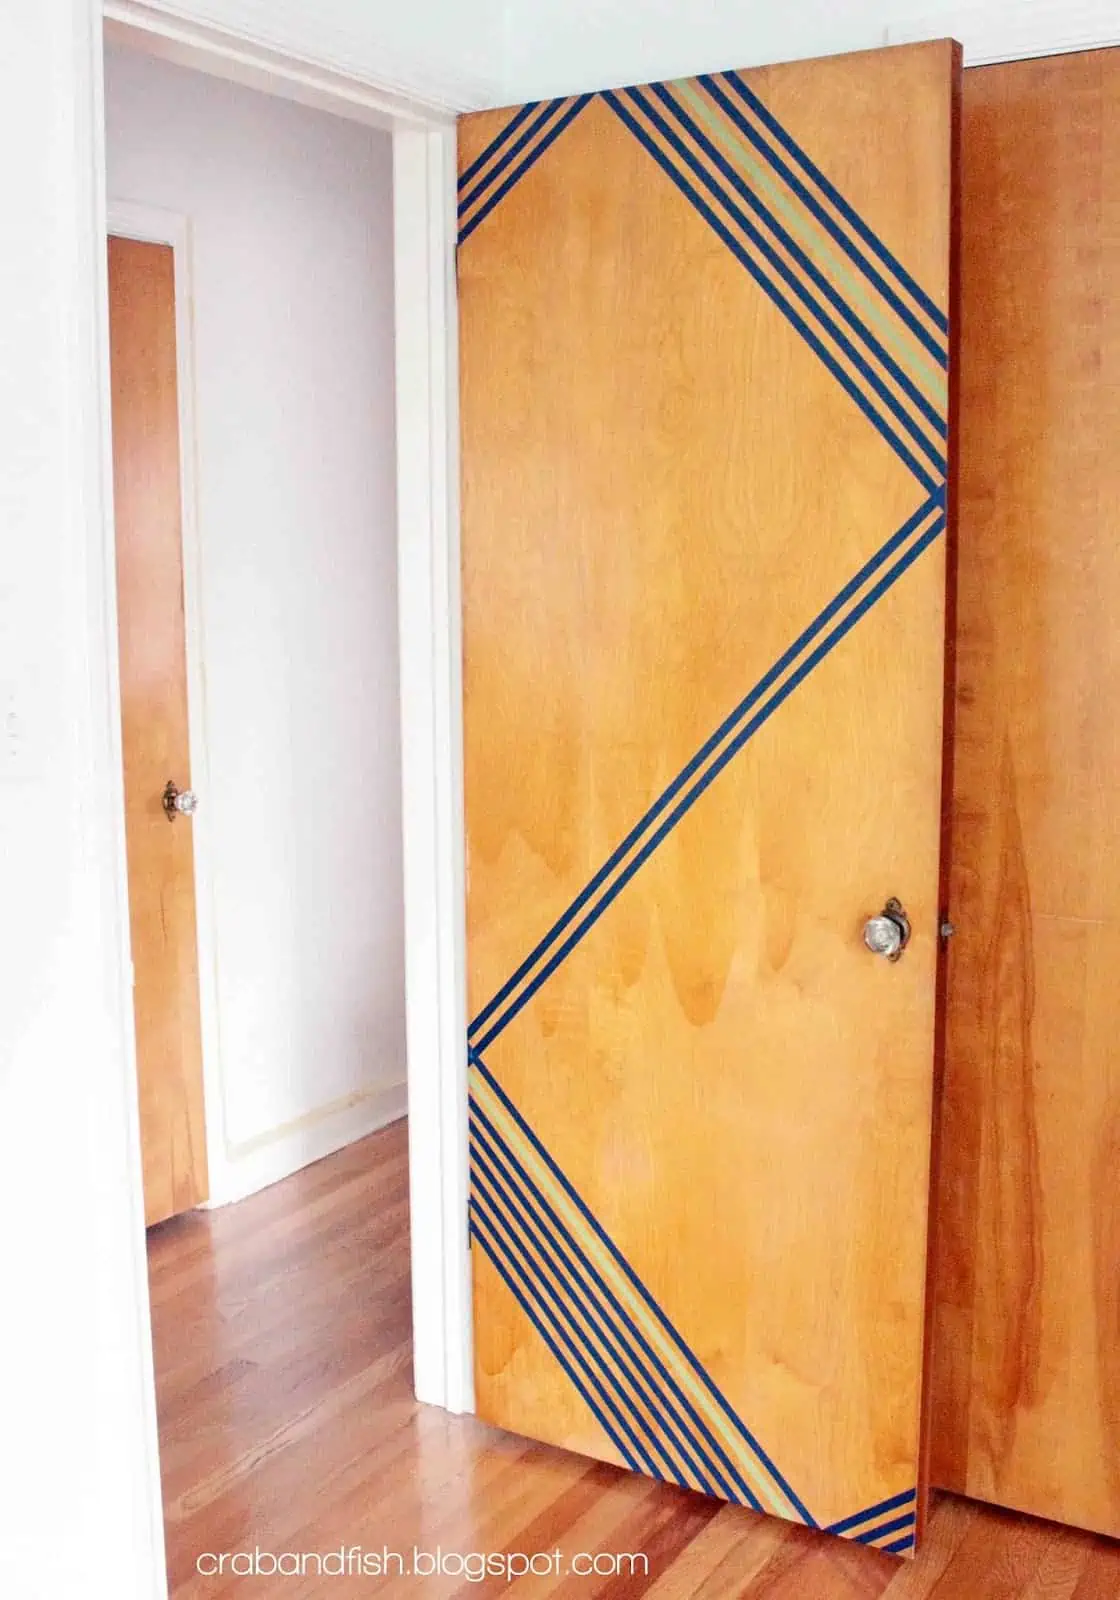 Dorm Room Ideas: DIY Room Decor - Door Designs